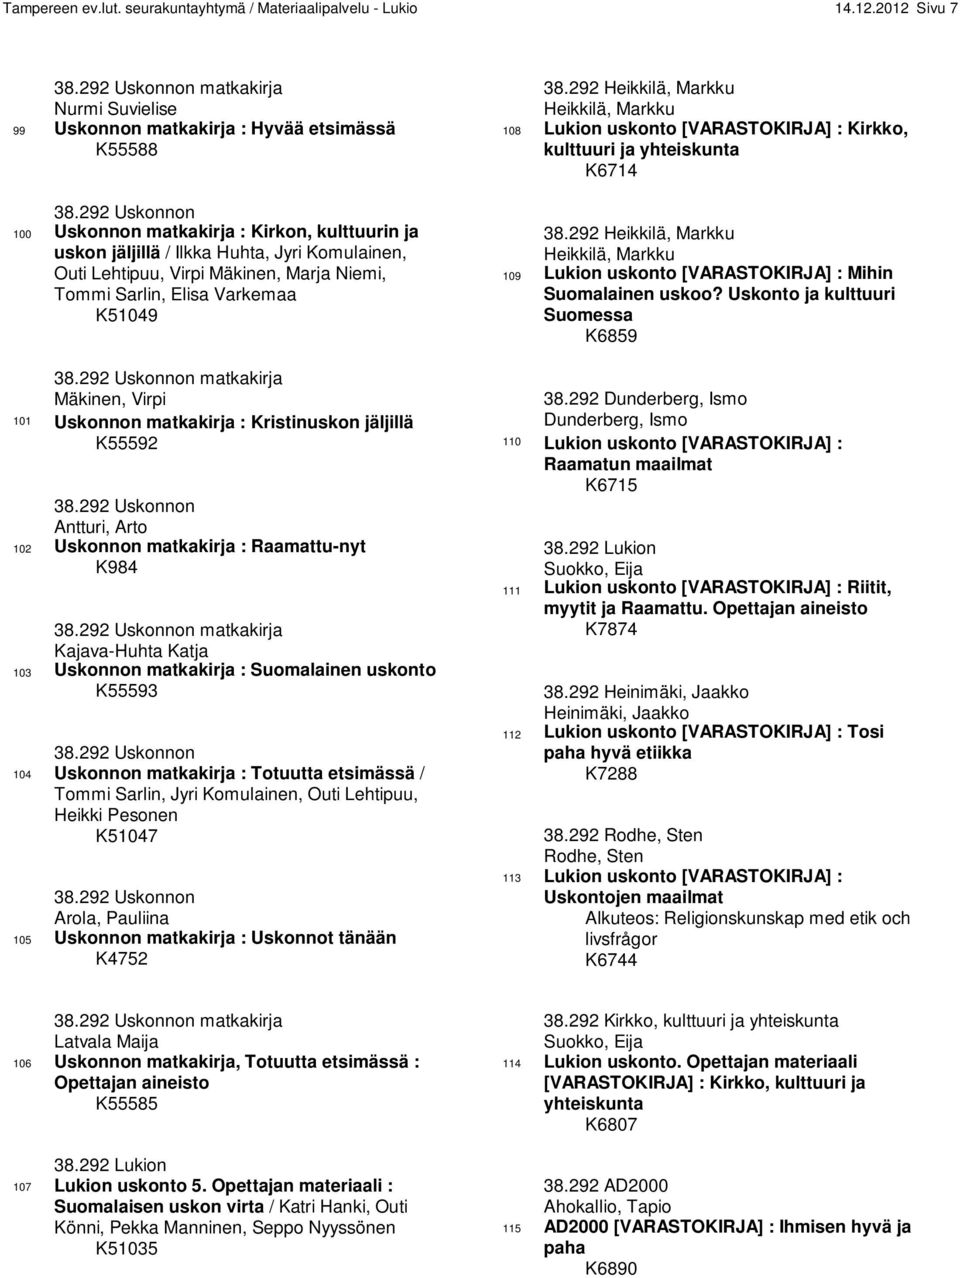 292 Uskonnon matkakirja Mäkinen, Virpi 101 Uskonnon matkakirja : Kristinuskon jäljillä K55592 38.292 Uskonnon Antturi, Arto 102 Uskonnon matkakirja : Raamattu-nyt K984 38.